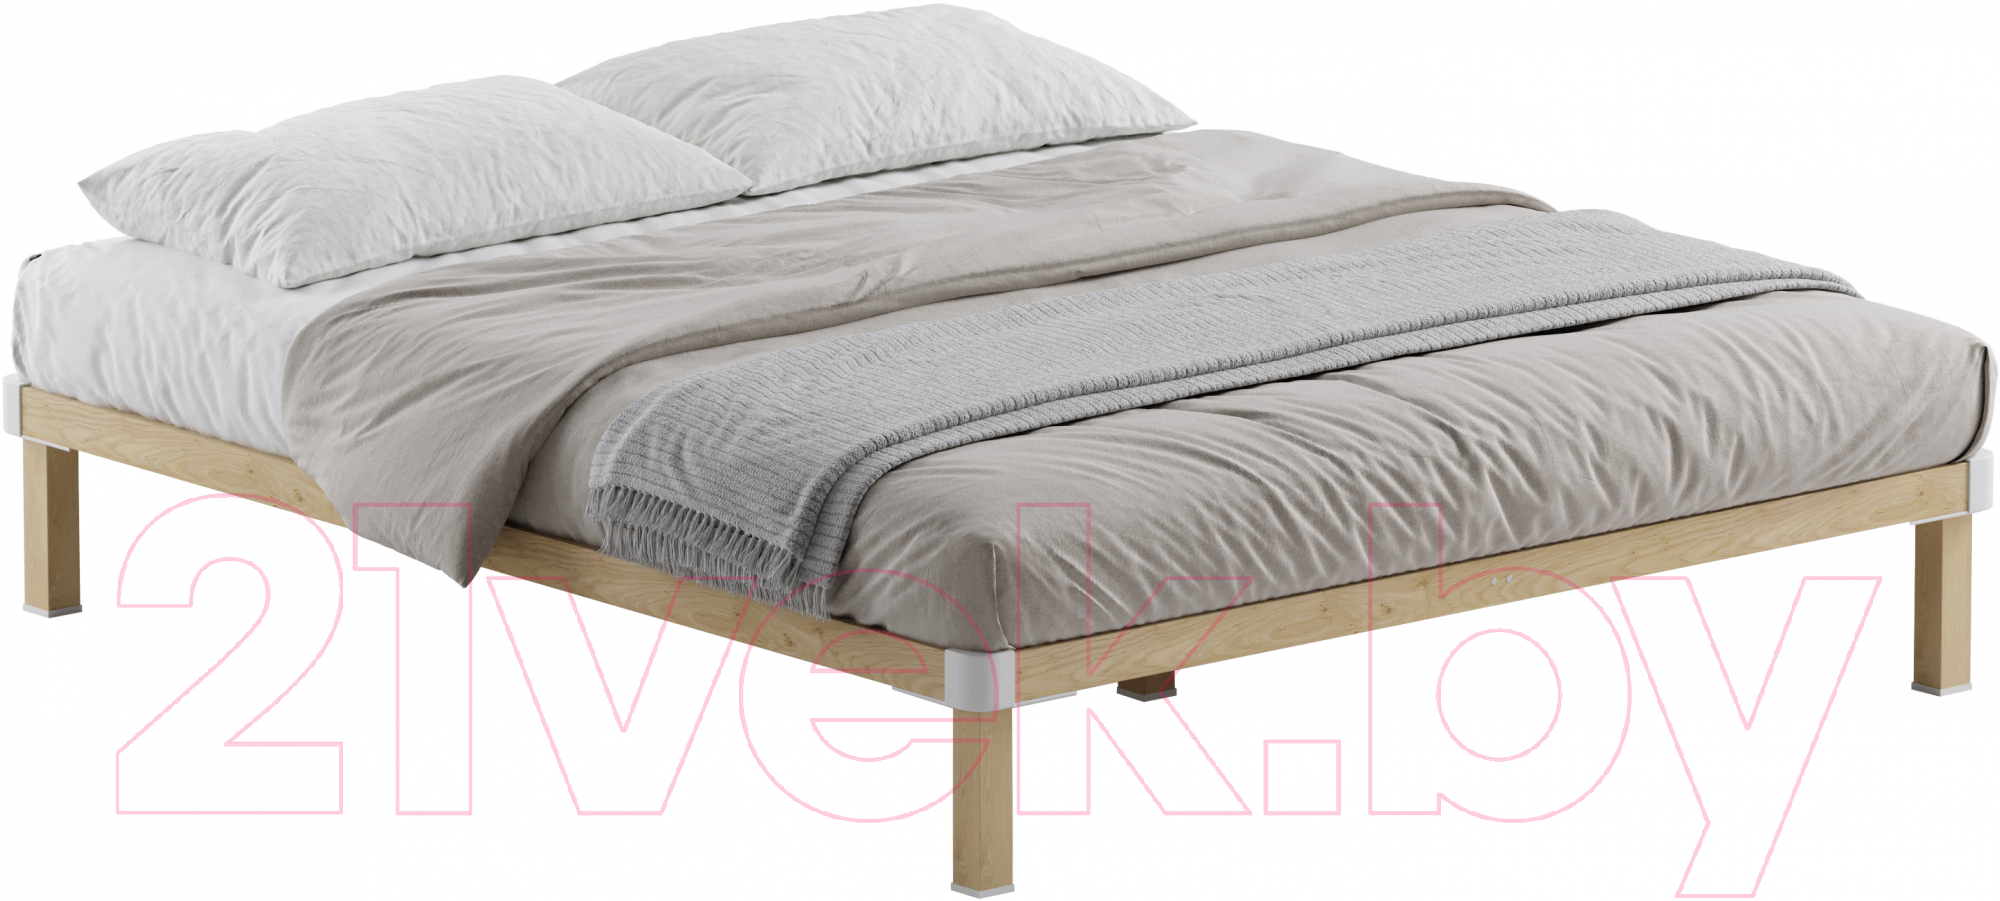 Двуспальная кровать Домаклево Канапе 2 160x200